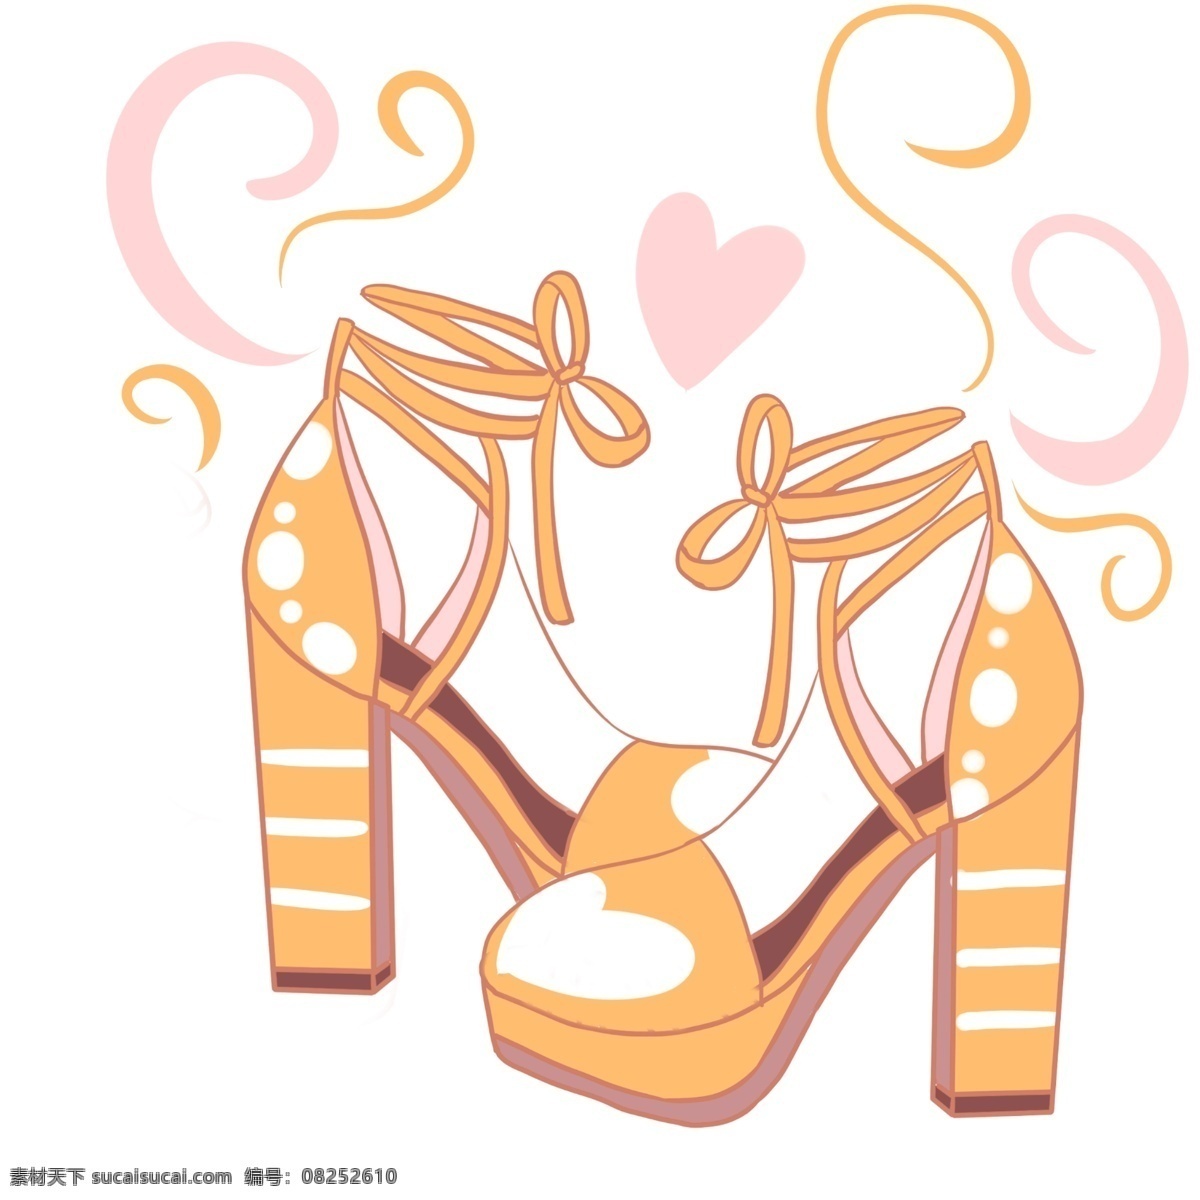 橘 色 高跟鞋 白色 爱心 生机勃勃 充满生气 粉色花蕊 萌萌 可爱设计 创意设计 少女装扮 手绘 小清新